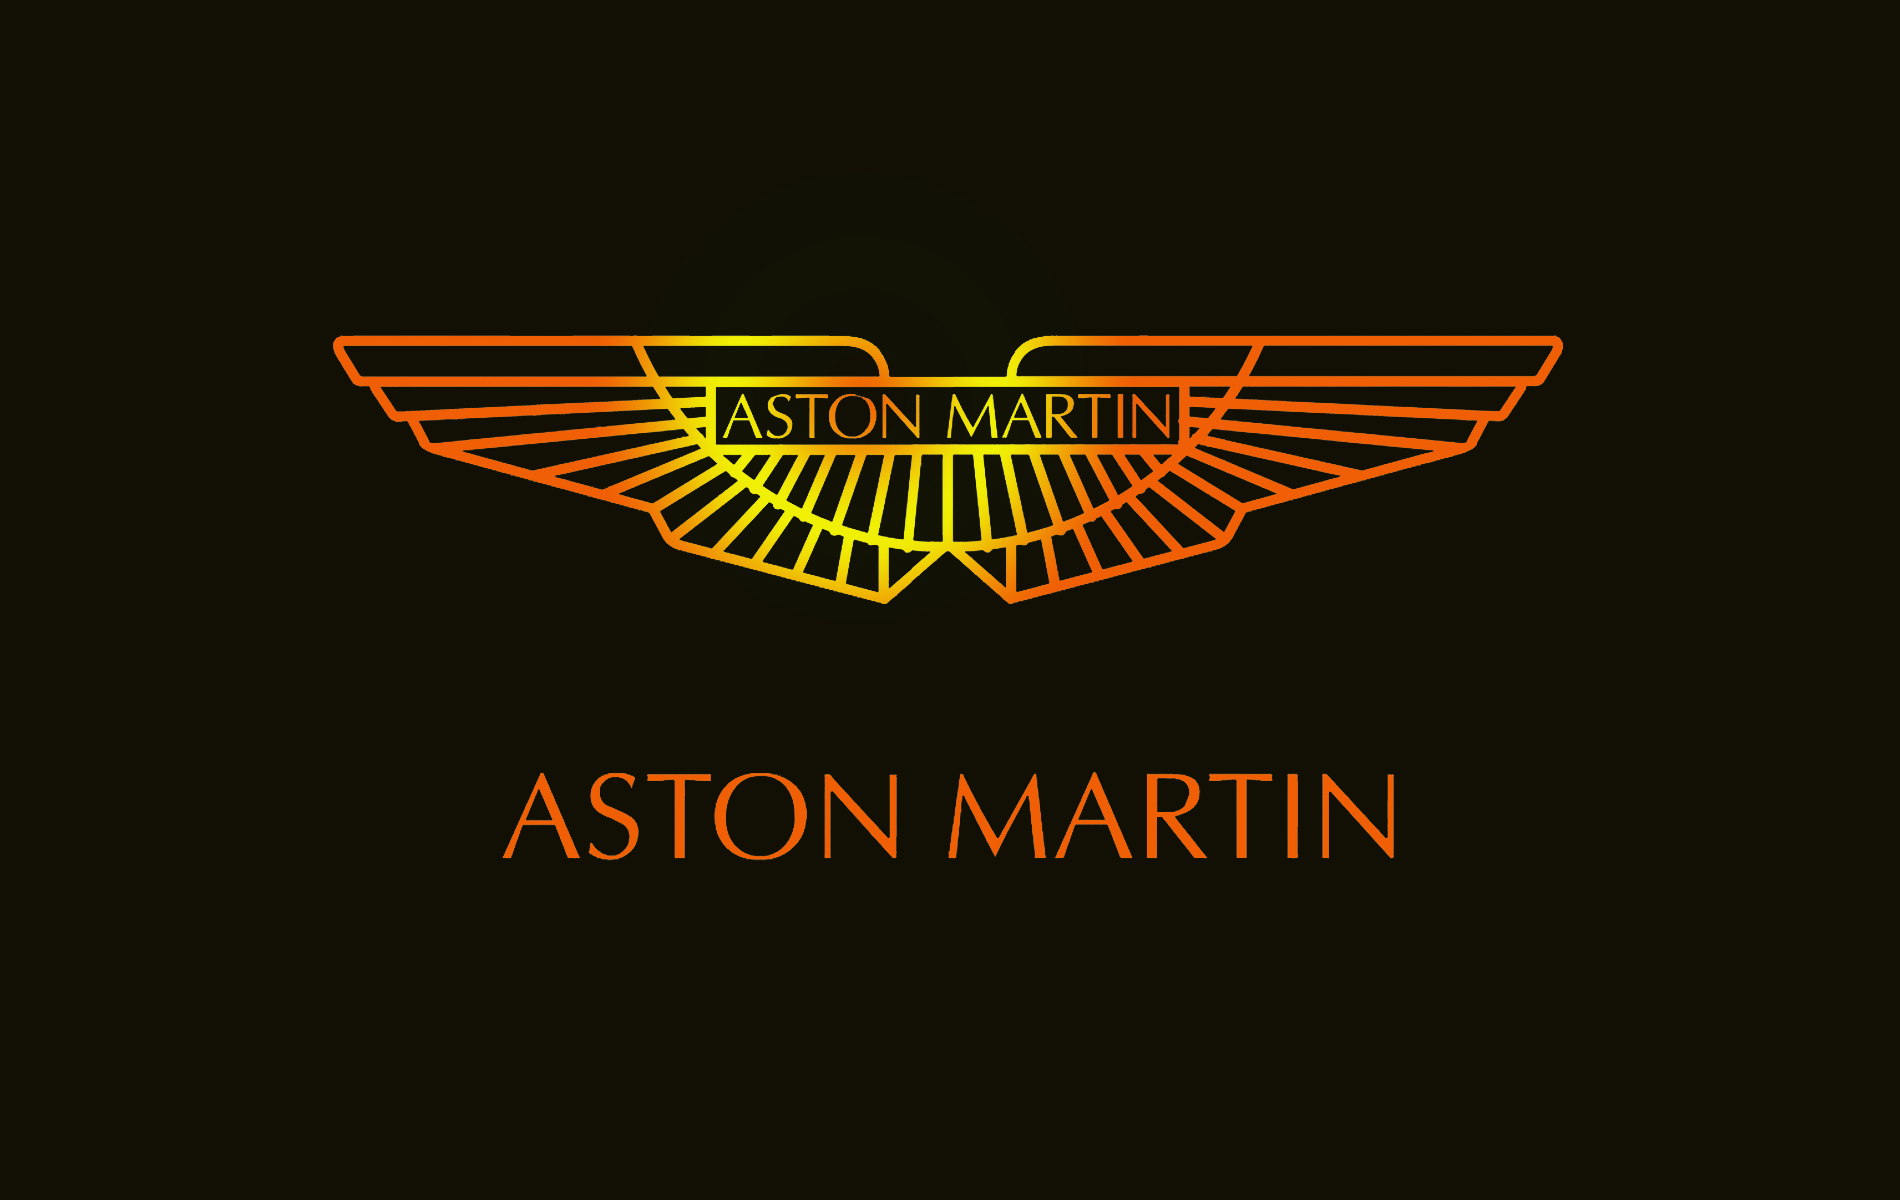 aston martin logo fondos de pantalla,texto,fuente,emblema,gráficos,diseño gráfico